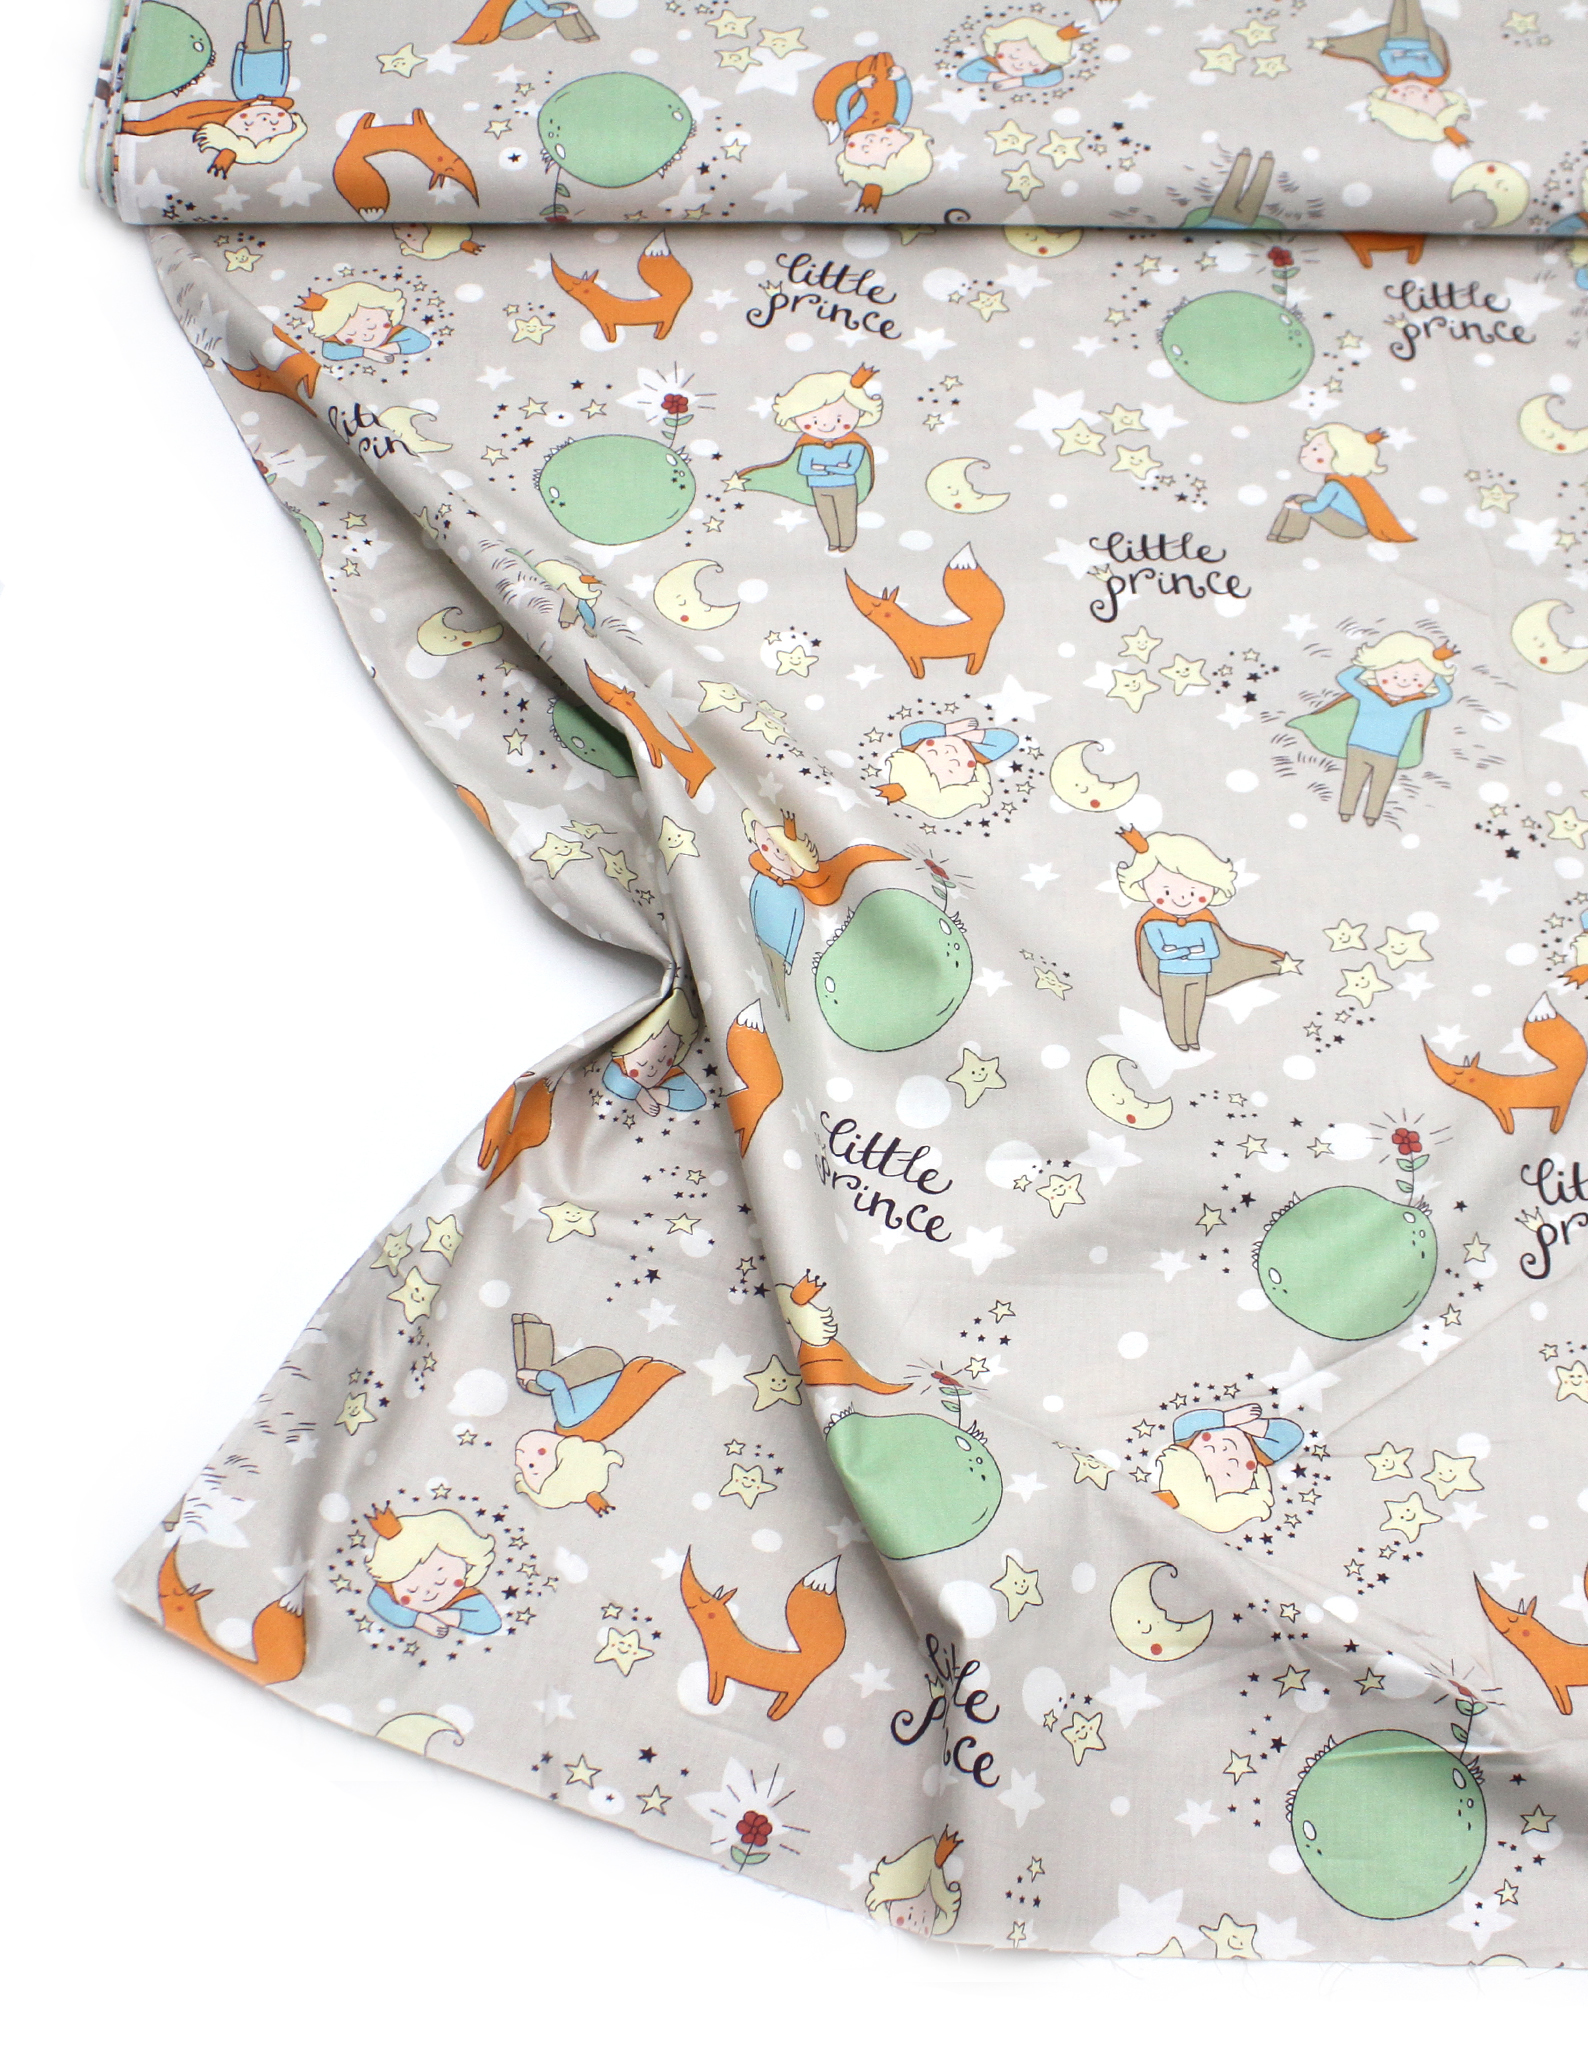 Одежда Новорожденным Интернет Магазин Маленький Принц